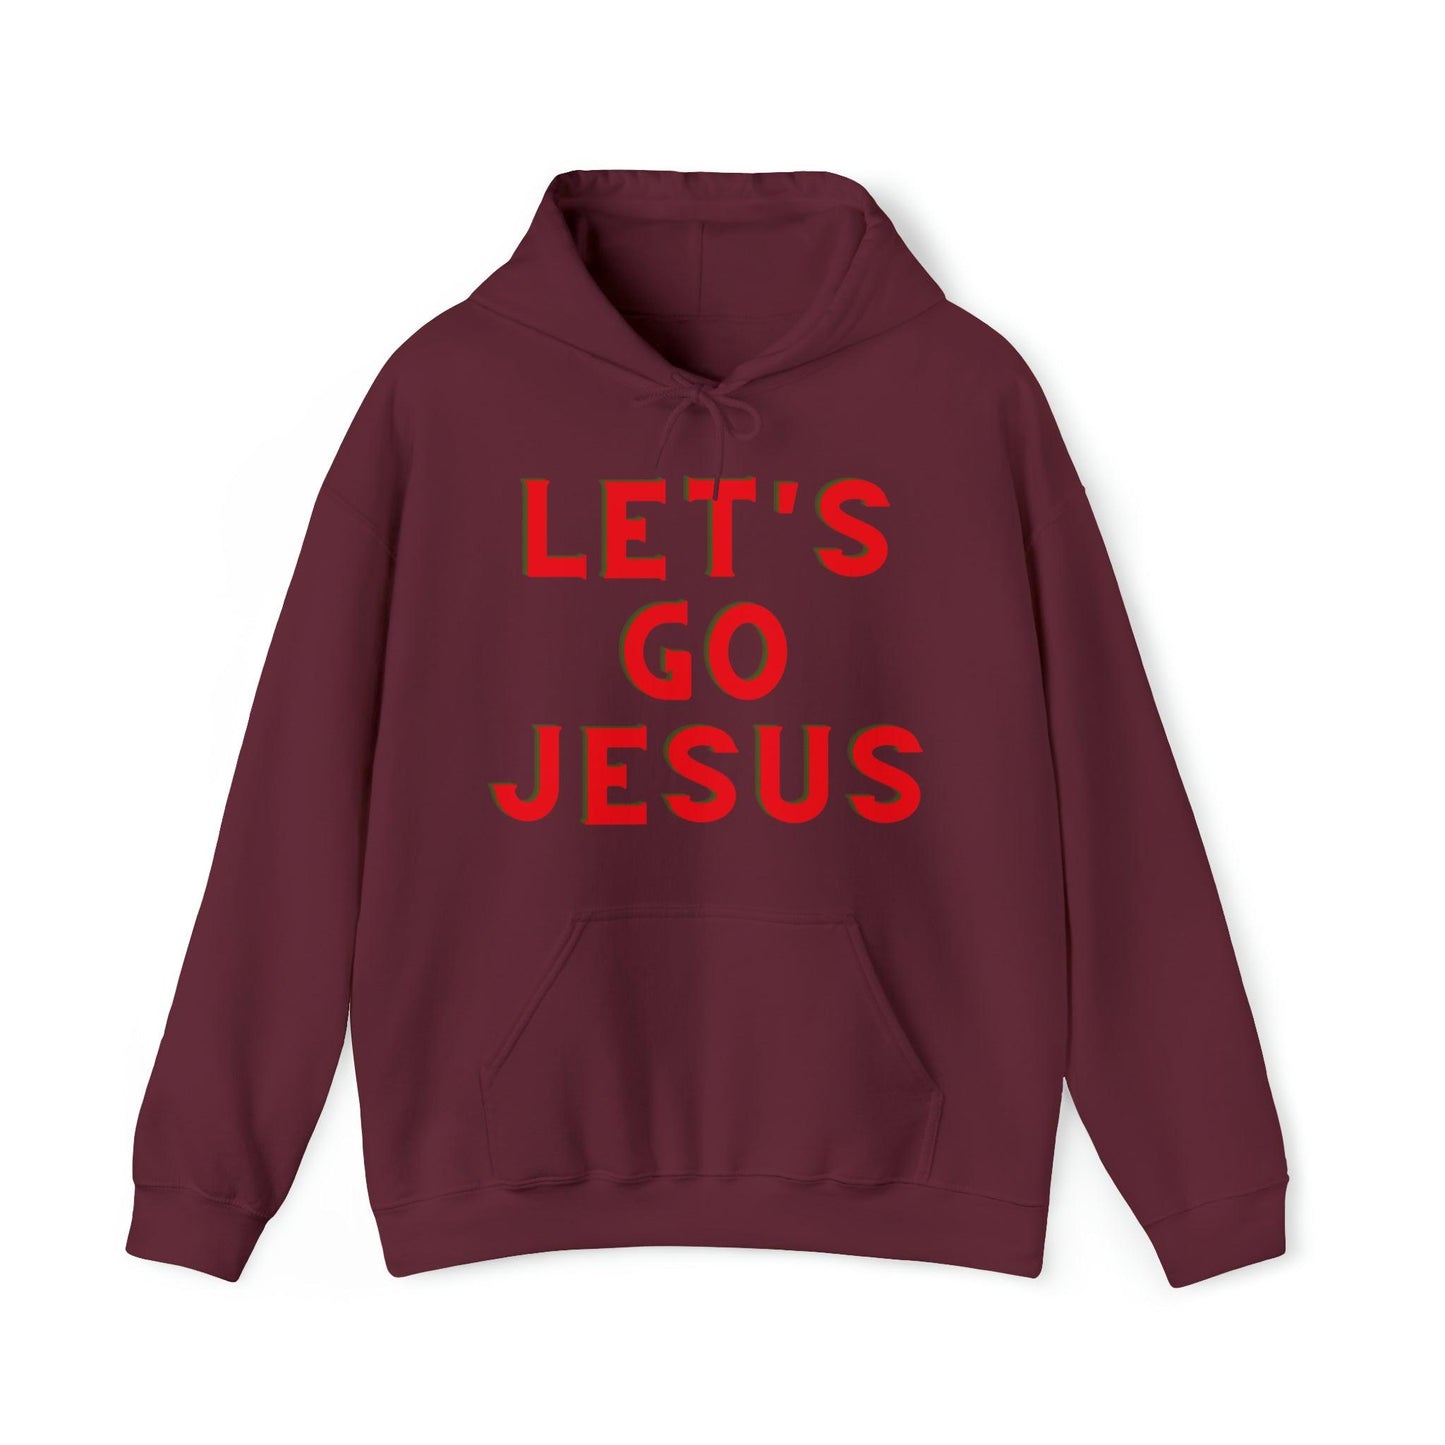 Faith Shirt Let's Go Jesus Hooded Sweatshirt Funny Christian Shirt Christian Gift Trendy Christian Sweatshirt Religious Sweatshirt Jesus Hoodie - Giftsmojo